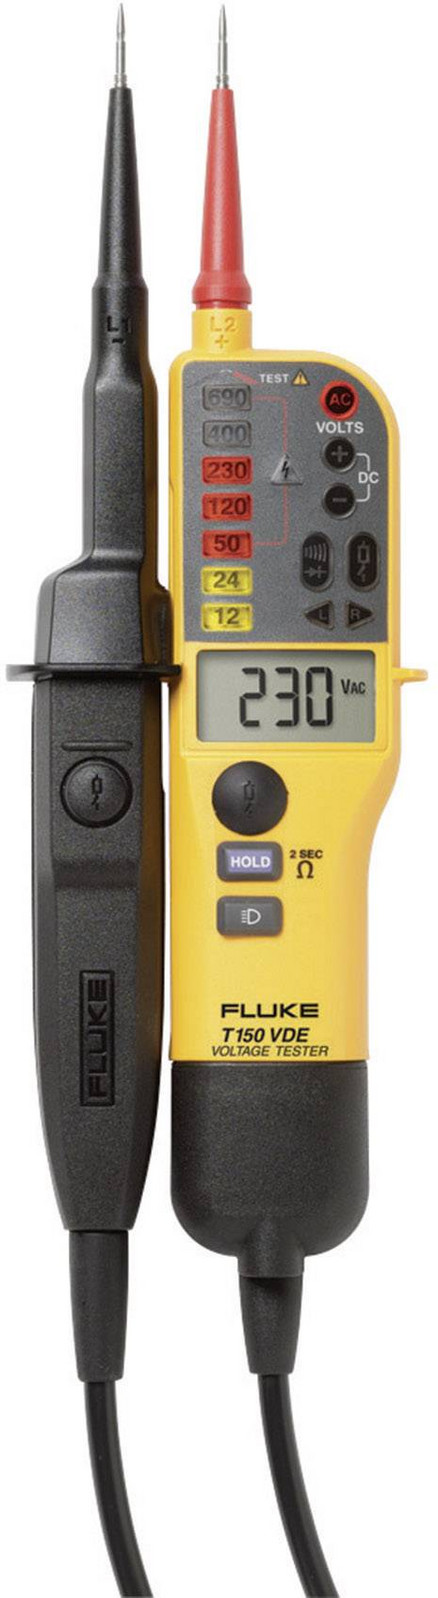 Fluke T150/VDE dvoupólová zkoušečka napětí, Kalibrováno dle (ISO), CAT III 690 V, CAT IV 600 V, LED, LCD, akustika , vibrace